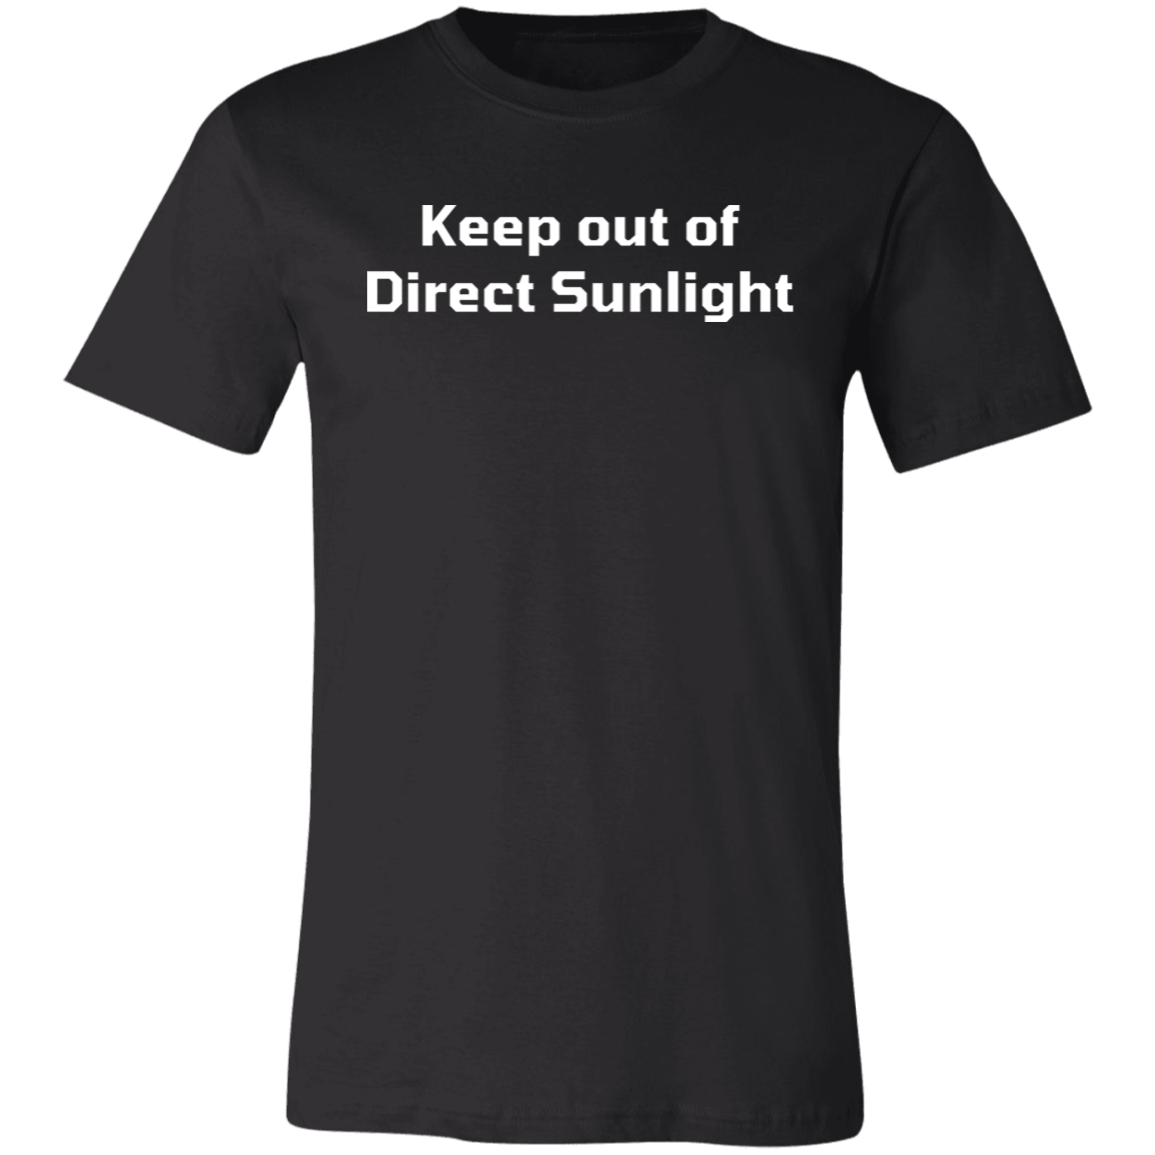 Direct Sunlight Short-Sleeve T-Shirt